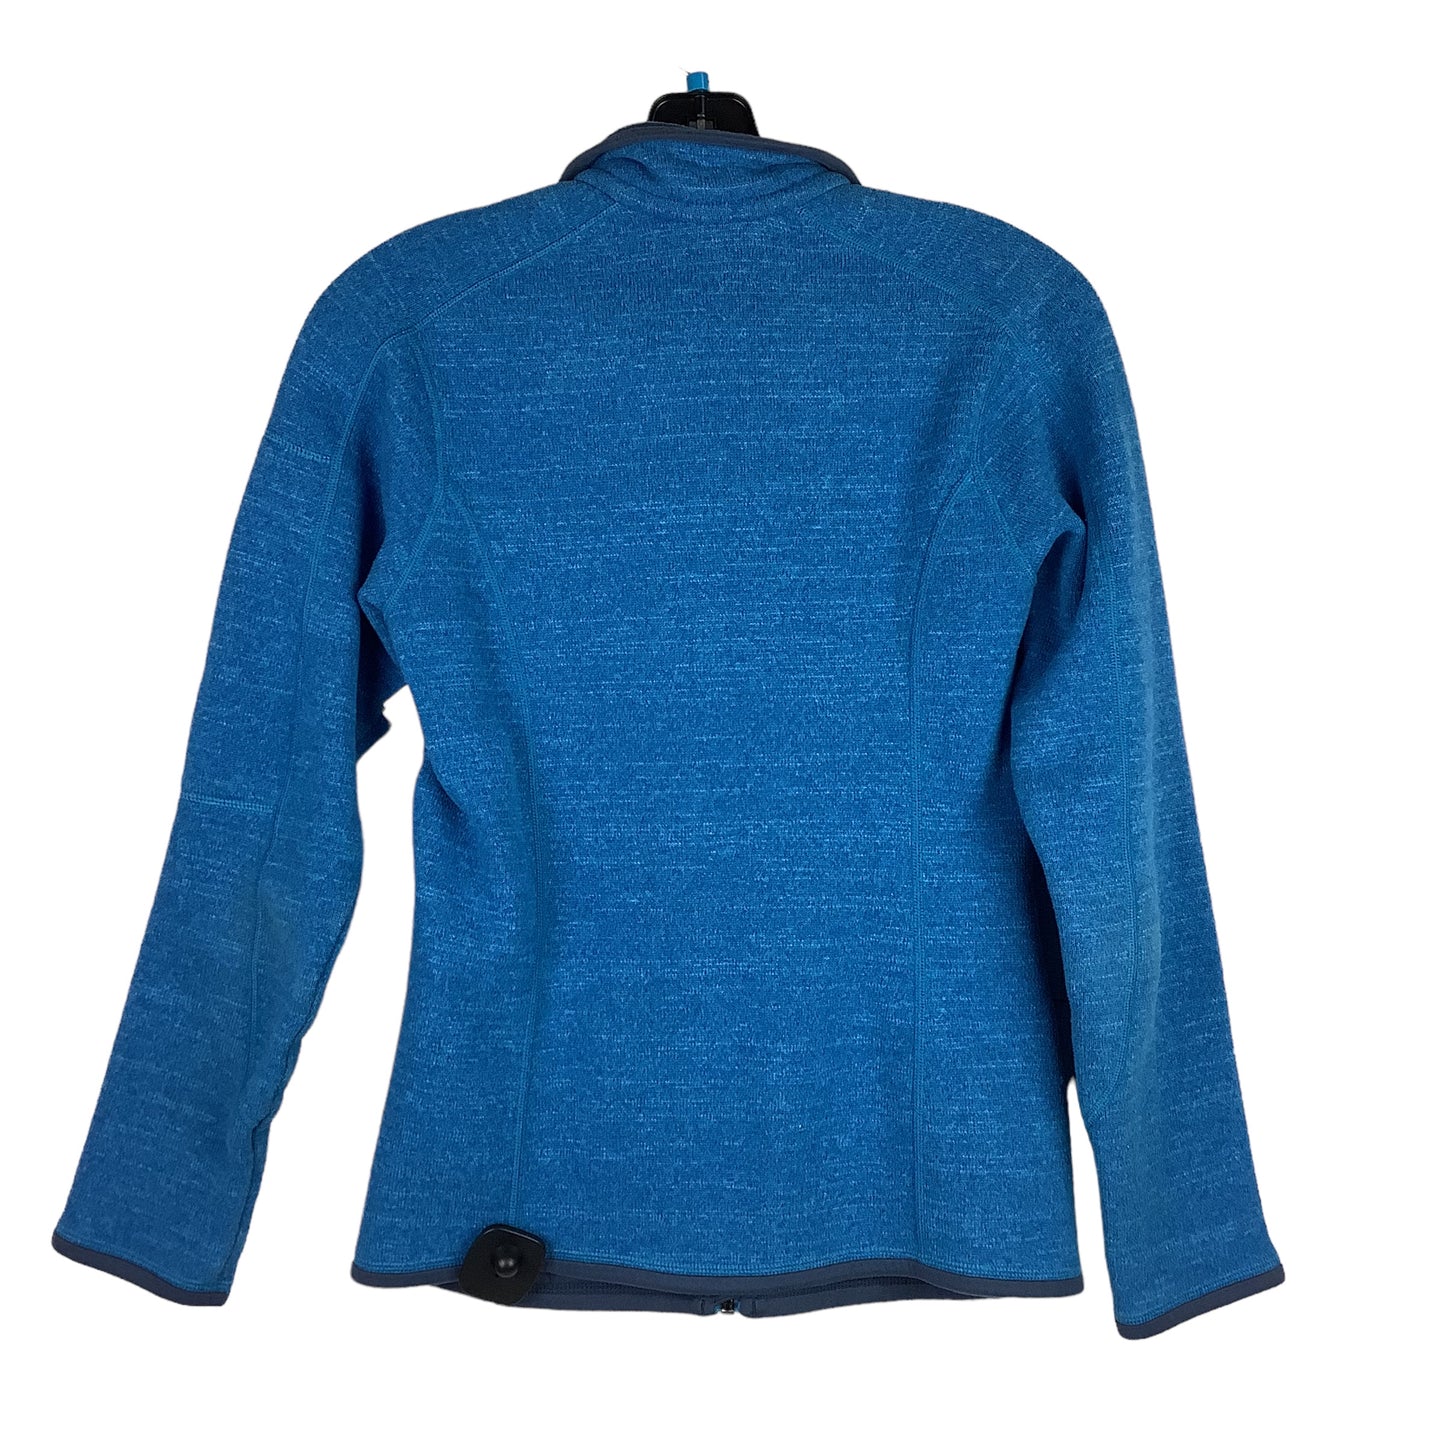 Jacket Designer By Patagonia  Size: Xs